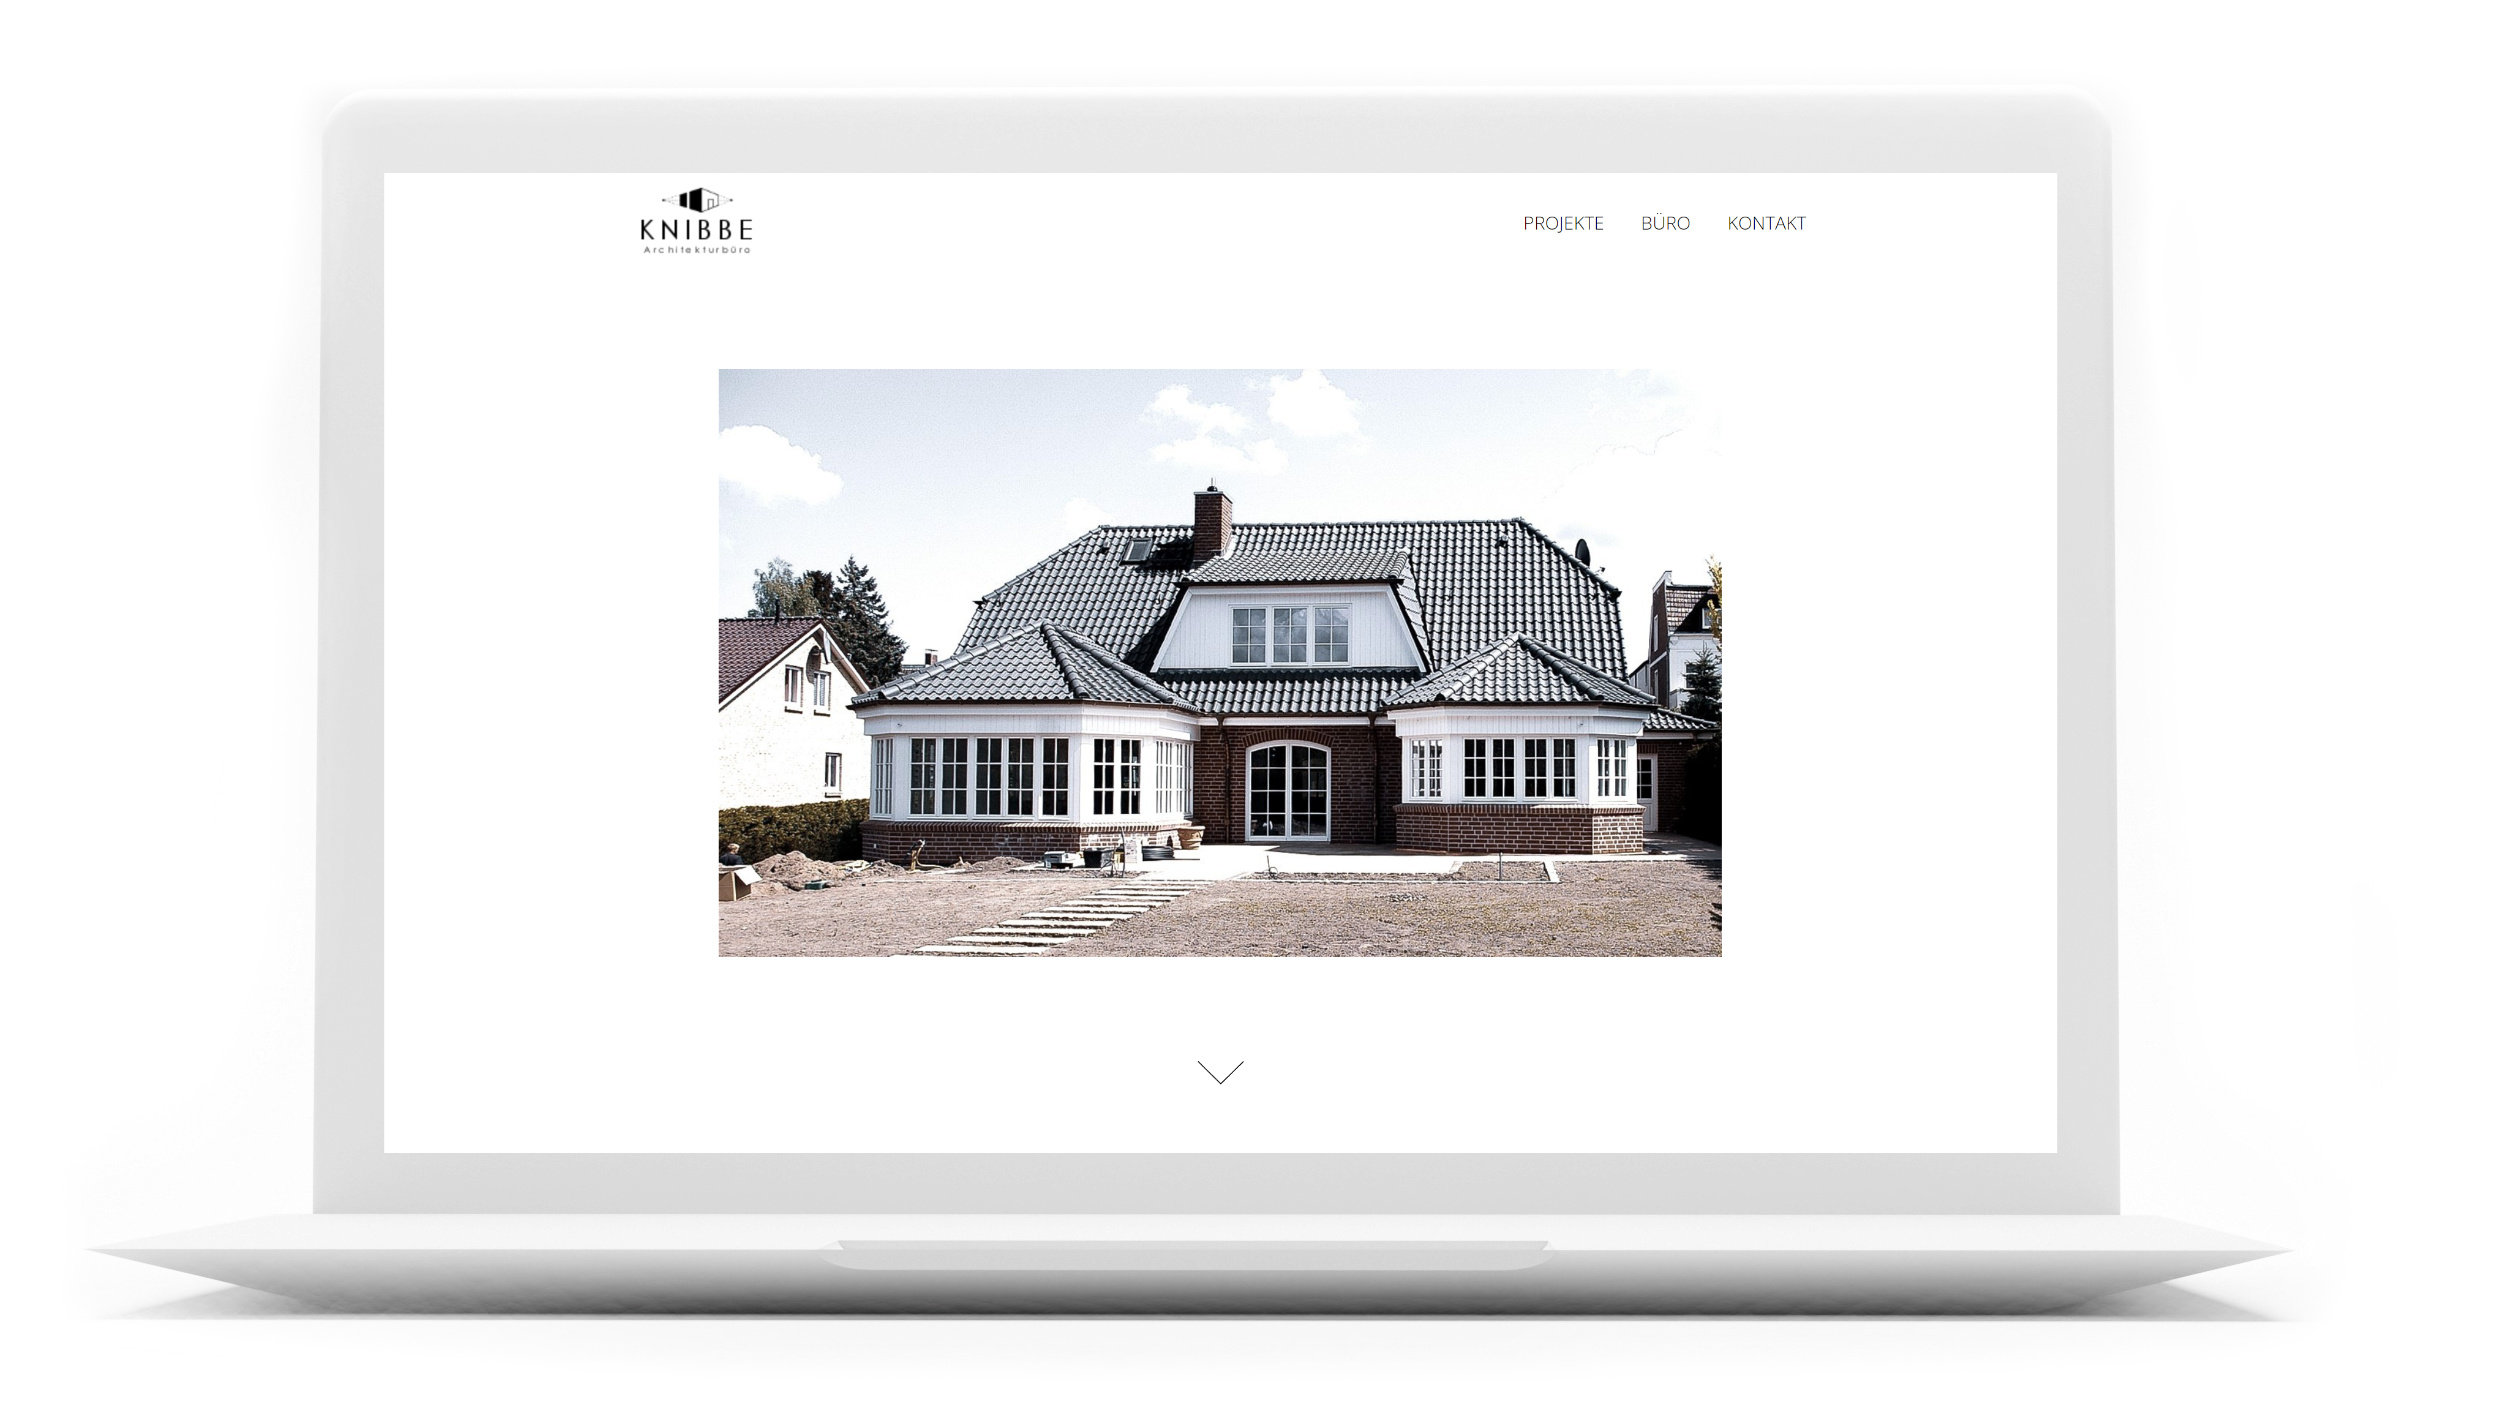 Knibbe Architekt Website Design auf Mac Book